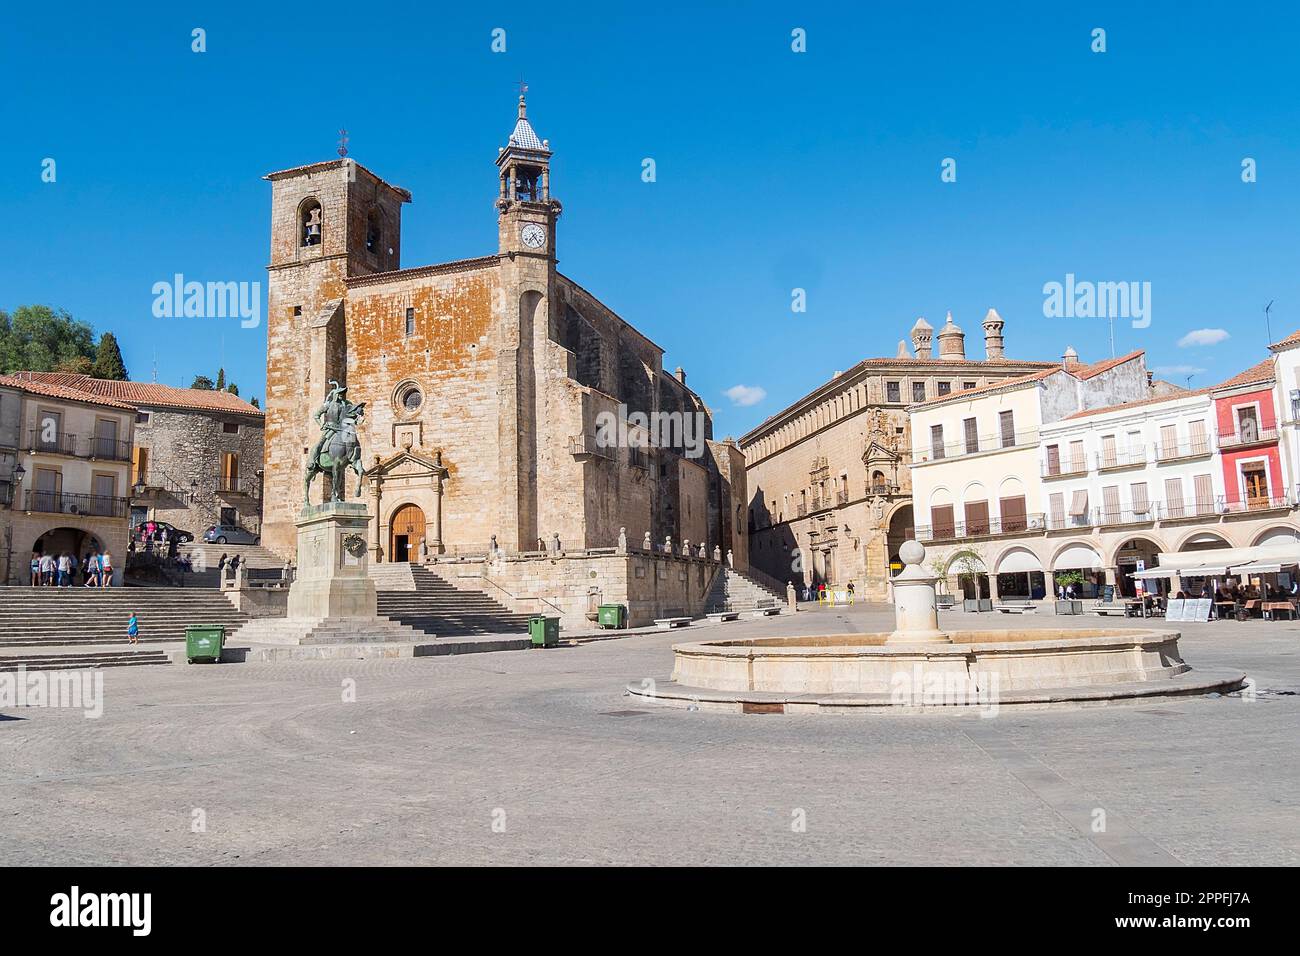 Hauptplatz von Trujillo. Besichtigungen der Kirche San Martin und Statue von Francisco Pisarro (Trujillo, Caceres, Spanien) Stockfoto